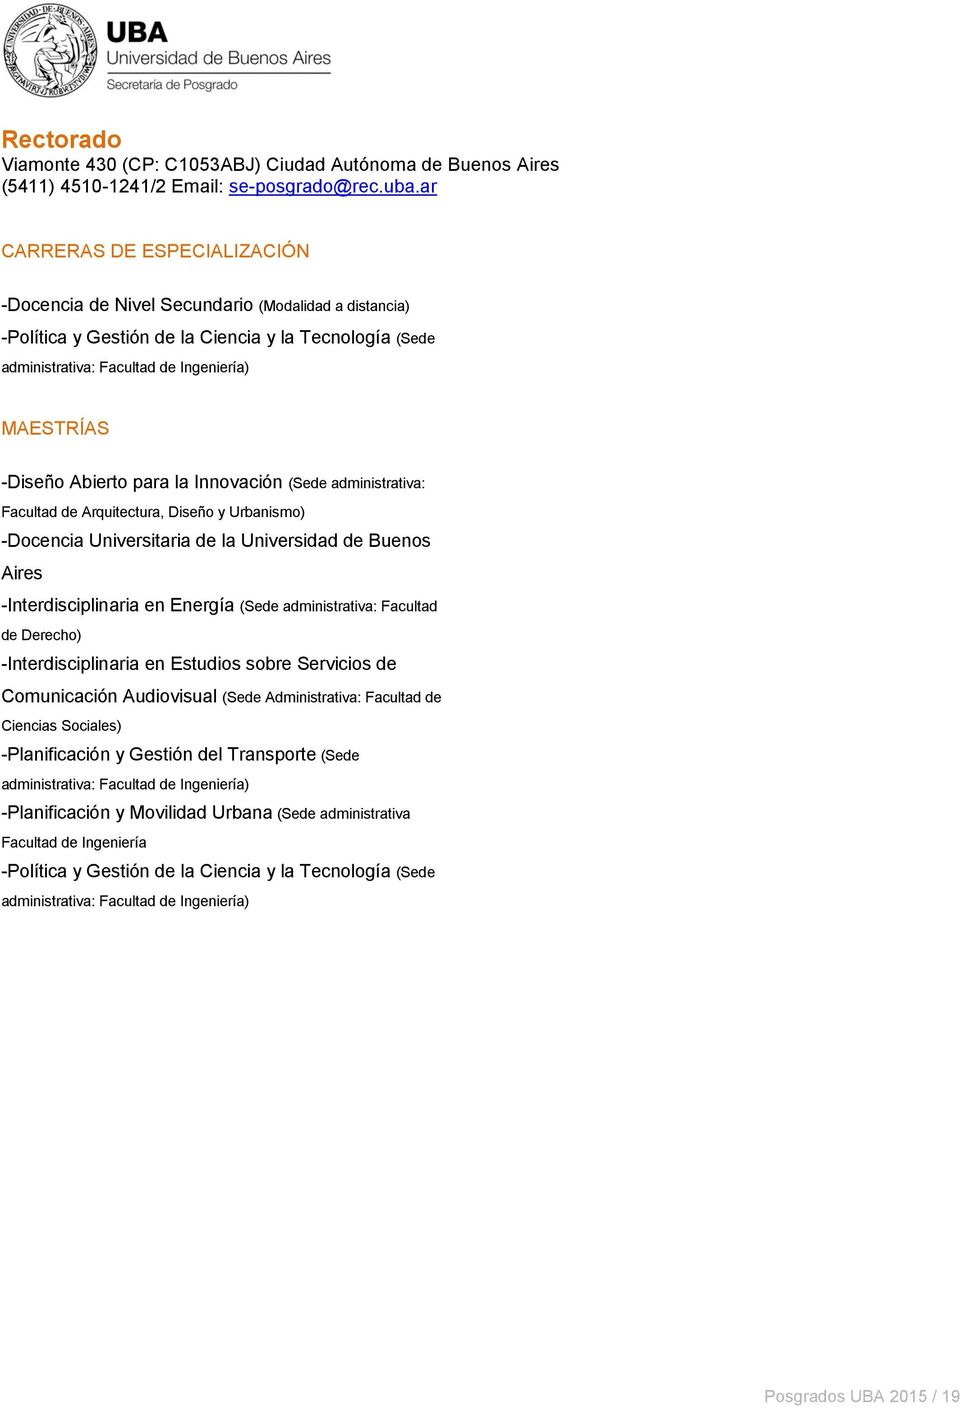 administrativa: Facultad de Arquitectura, Diseño y Urbanismo) -Docencia Universitaria de la Universidad de Buenos Aires -Interdisciplinaria en Energía (Sede administrativa: Facultad de Derecho)